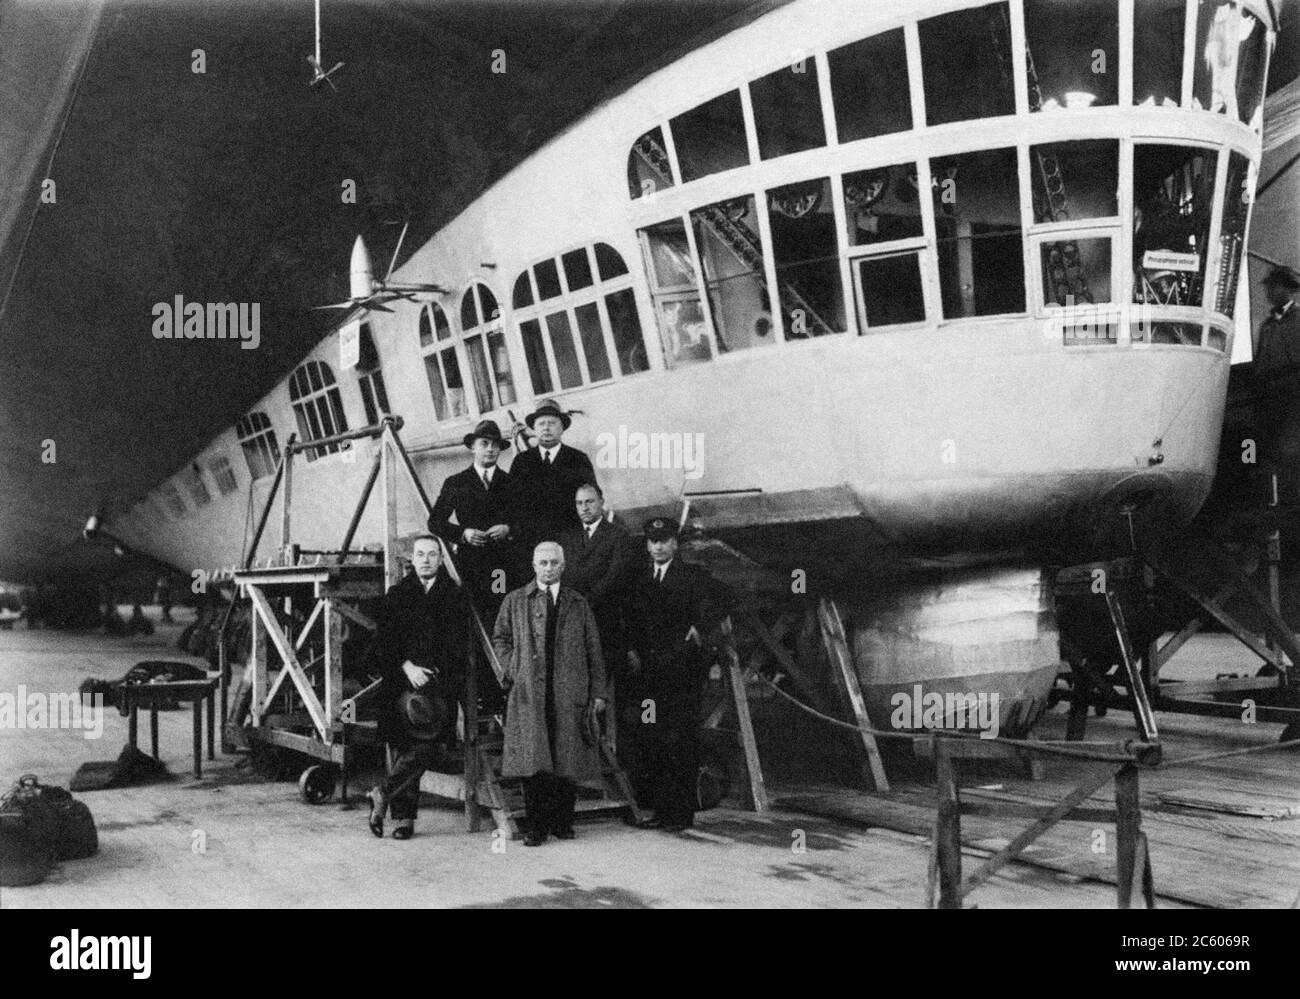 Teilnehmer der 'Hollandfahrt' am 13. Oktober 1929 in der Nähe des deutschen Luftschiffs LZ 127 'Graf Zeppelin' in einem Hangar in Friedrichshafen Stockfoto